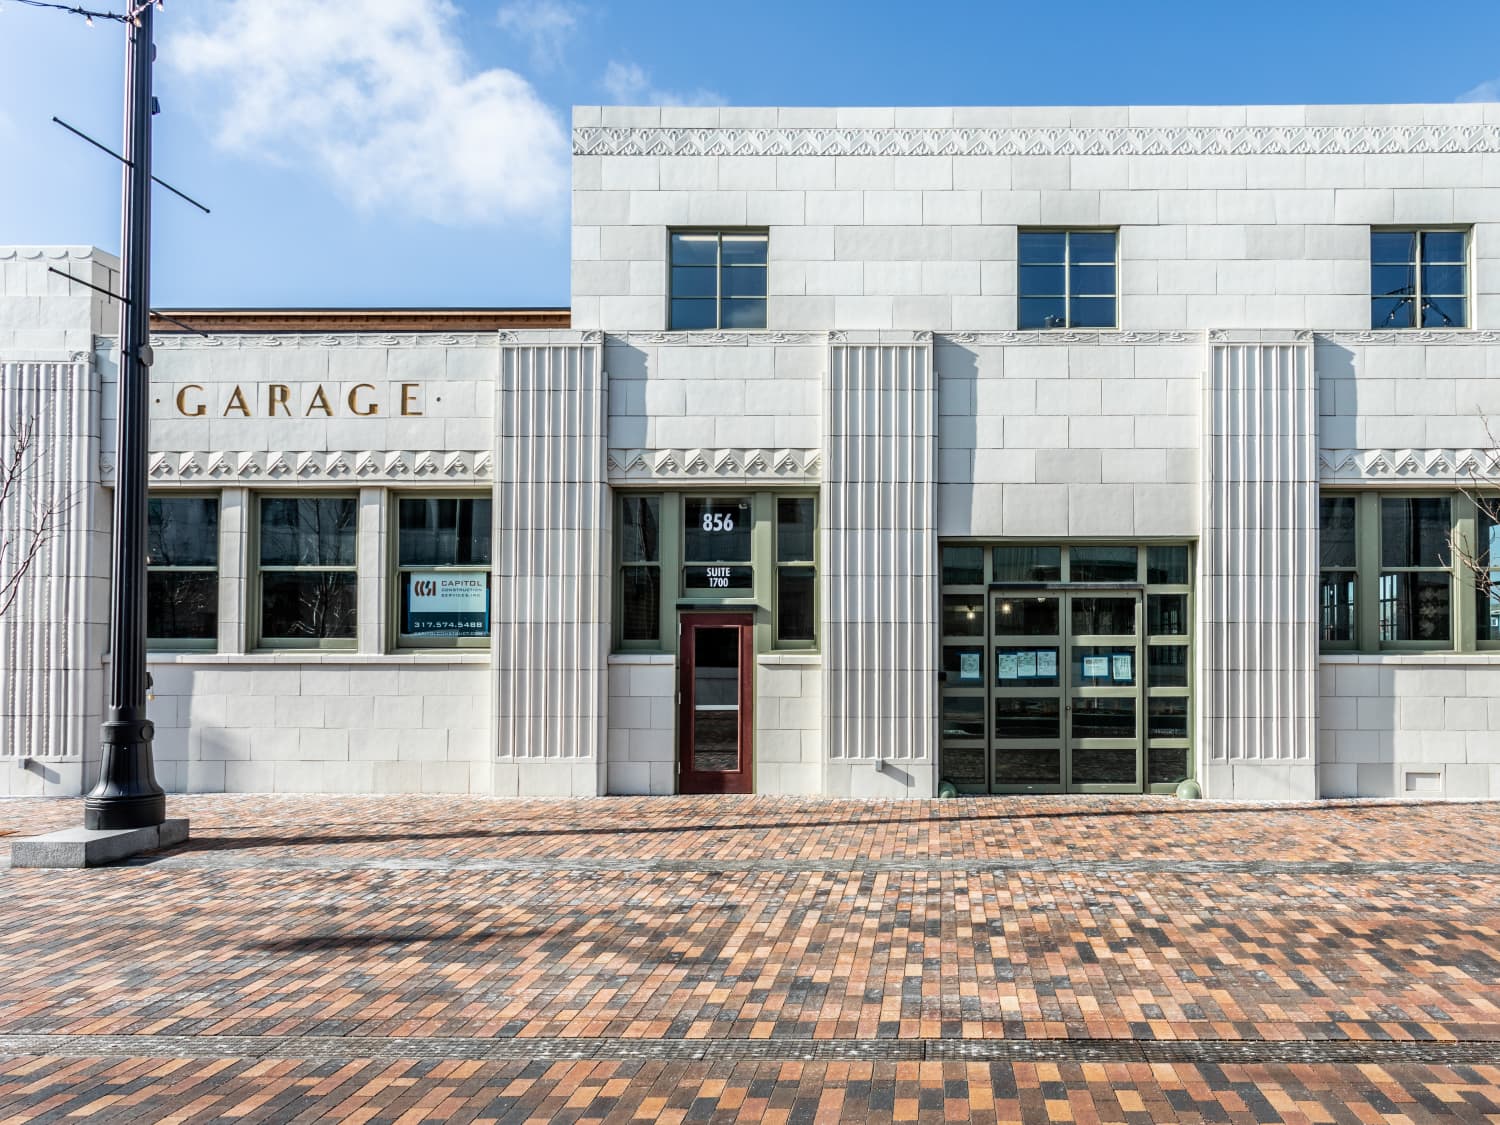 Art Deco Garage by Slightlytheklown on DeviantArt